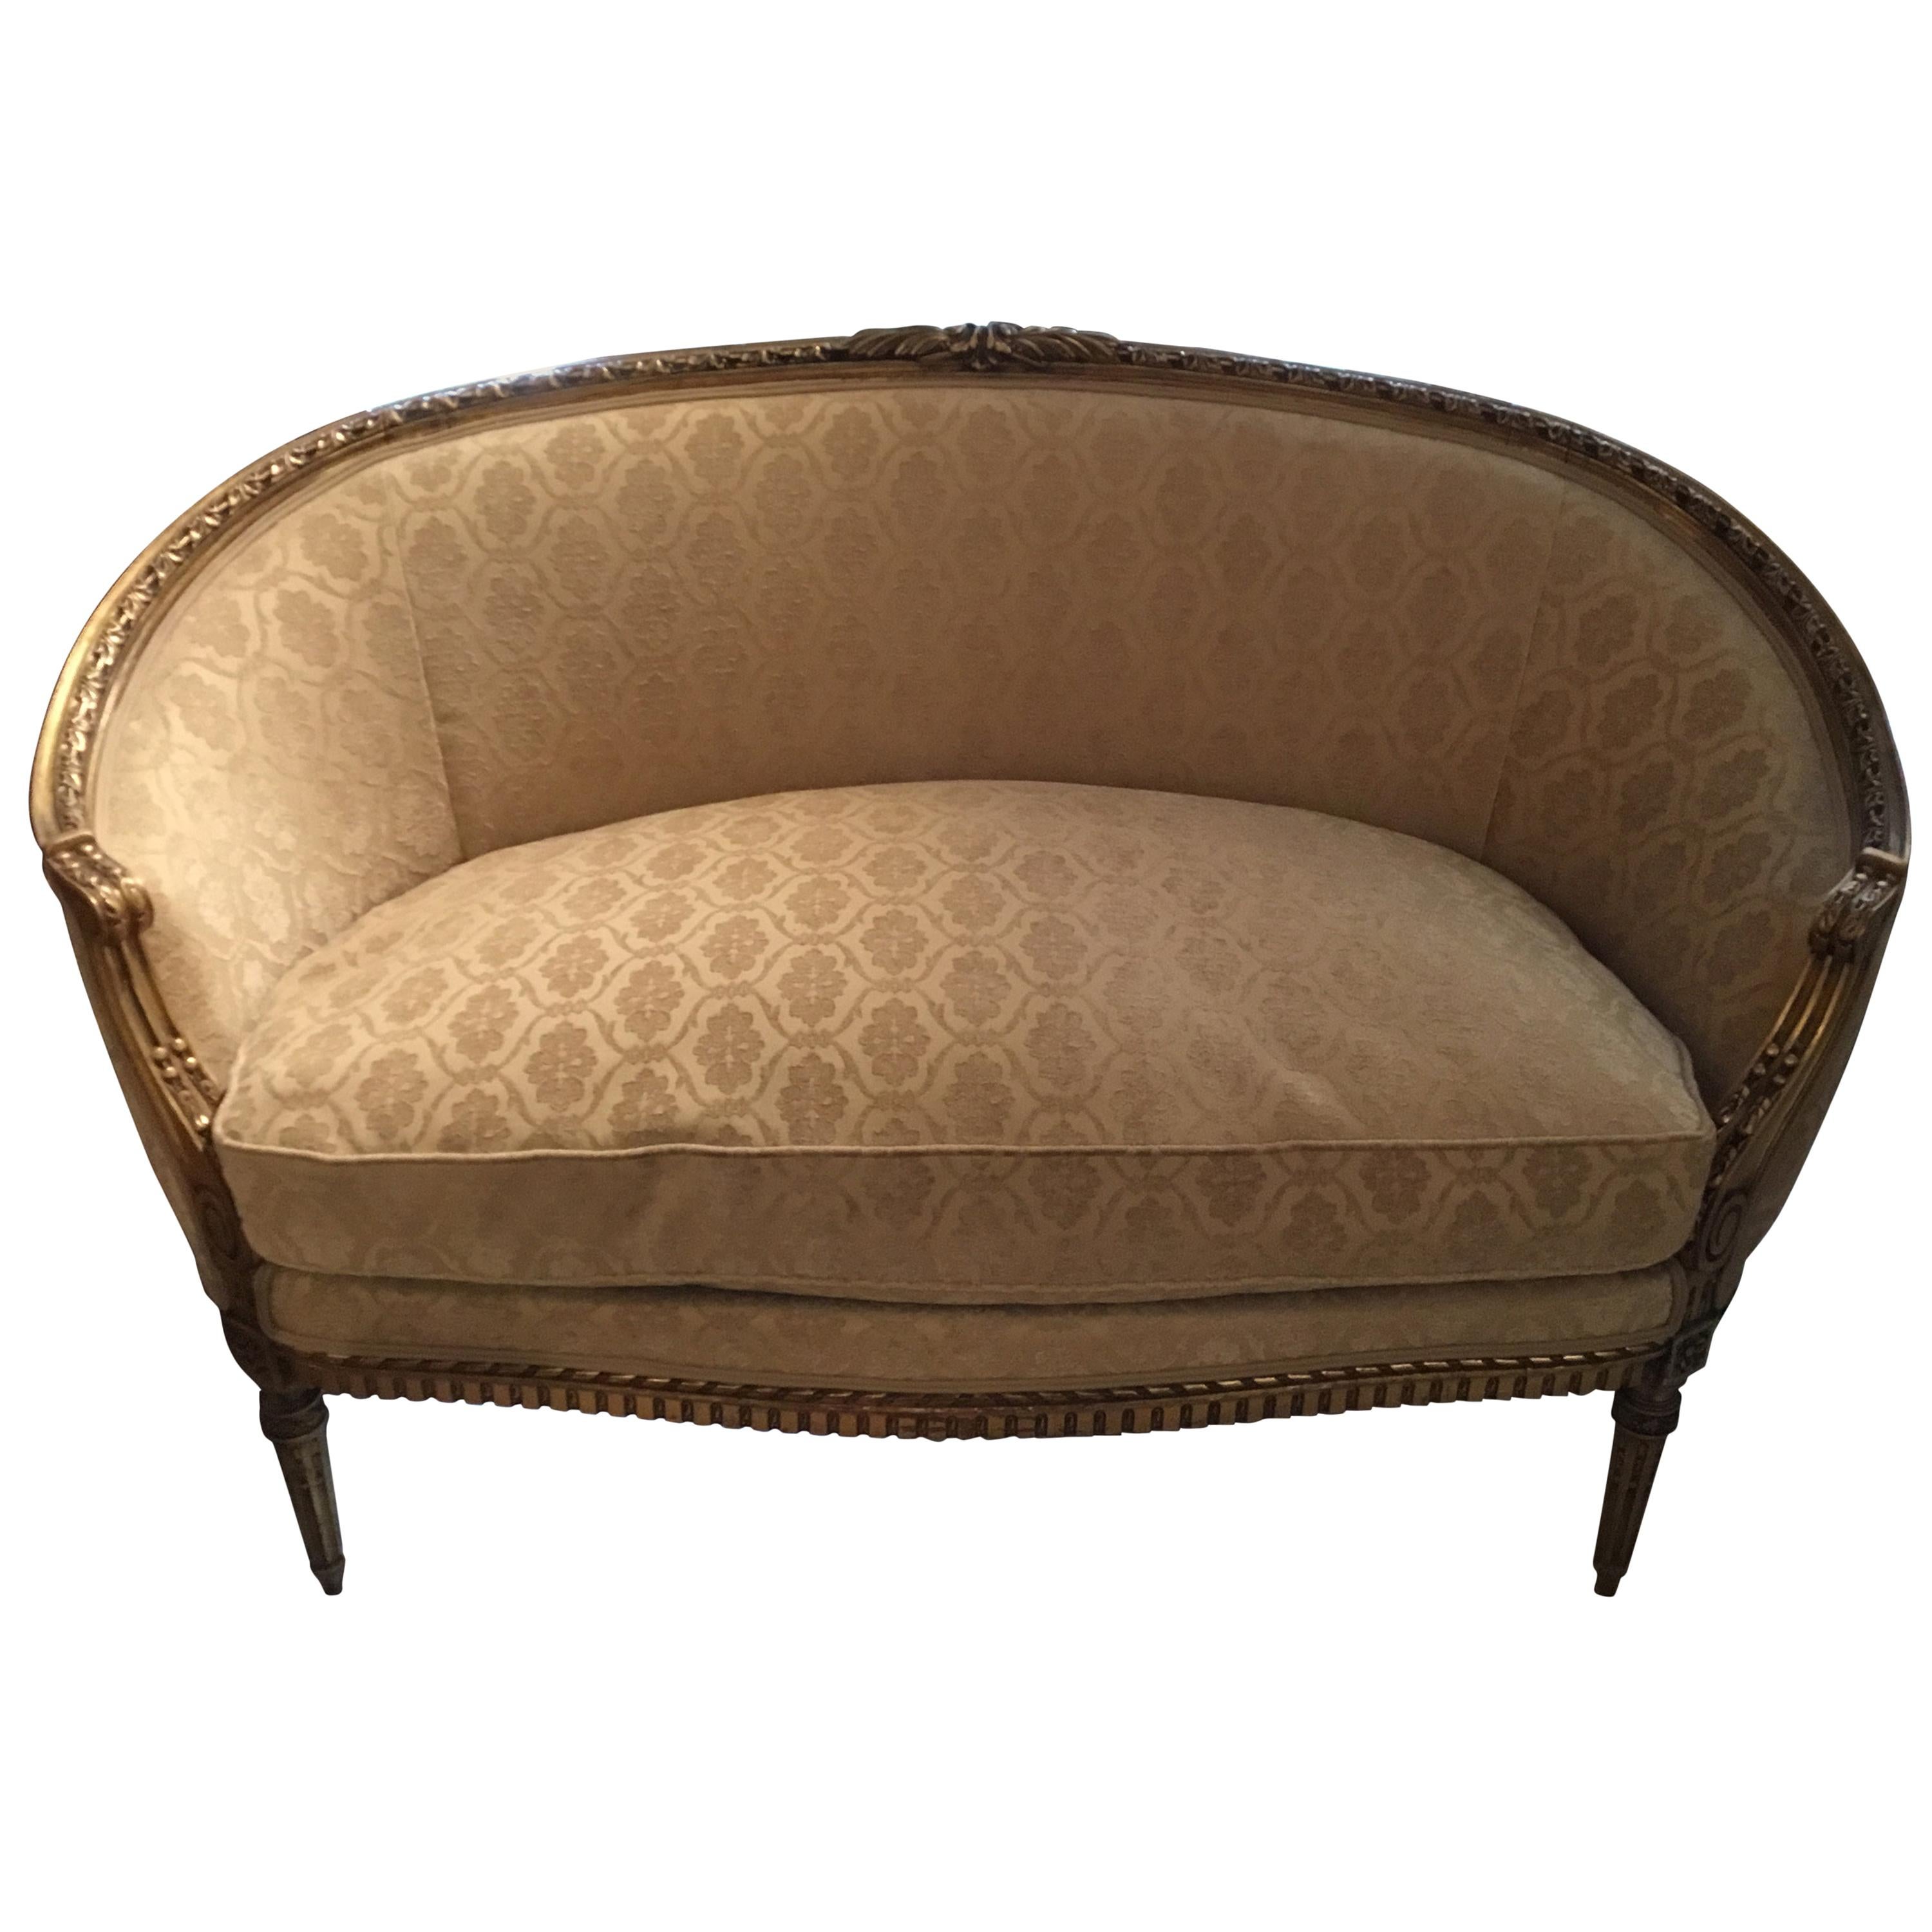 Settee et deux fauteuils français de style Louis XVI, bois doré, teinte crème